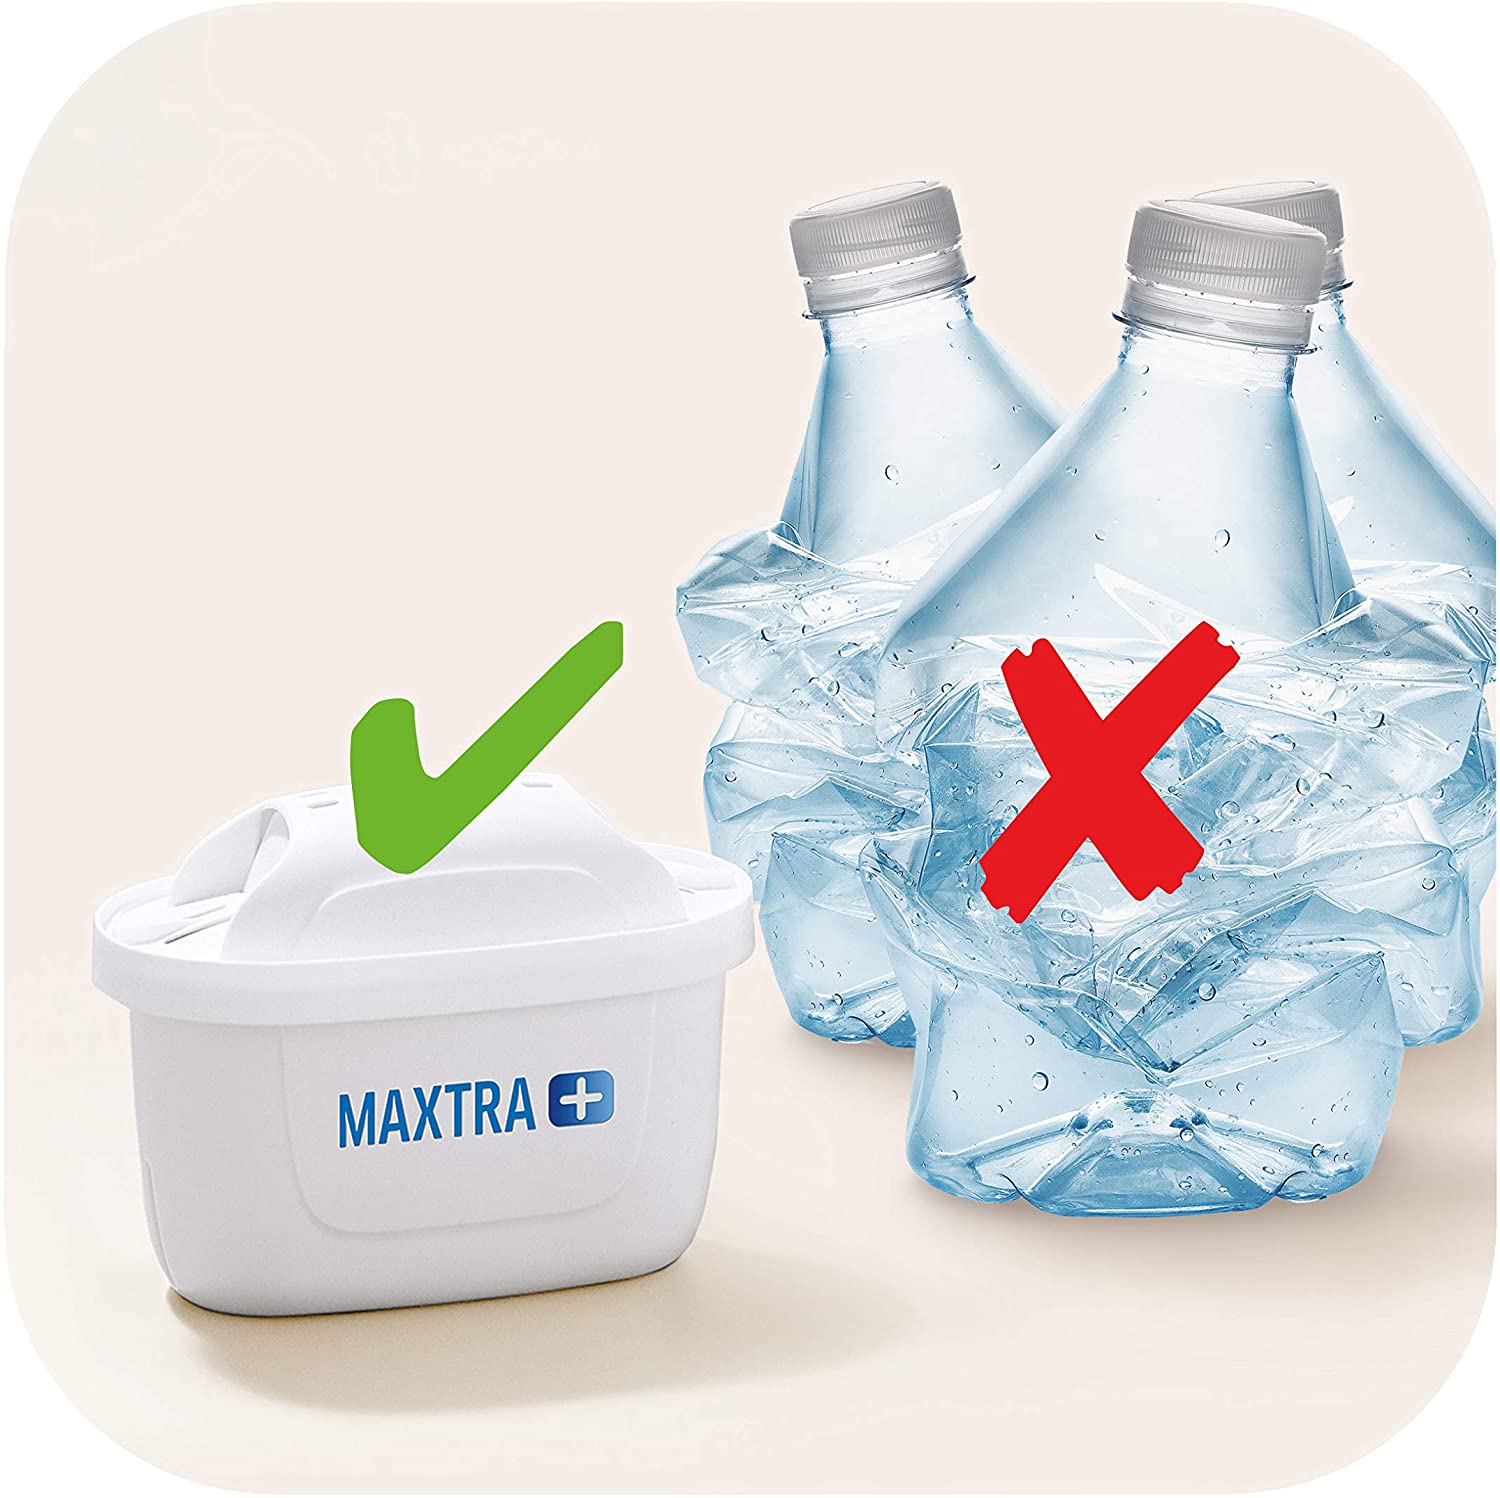 Brita  Filtros de agua Maxtra. Pack de 4 (3 + 1)